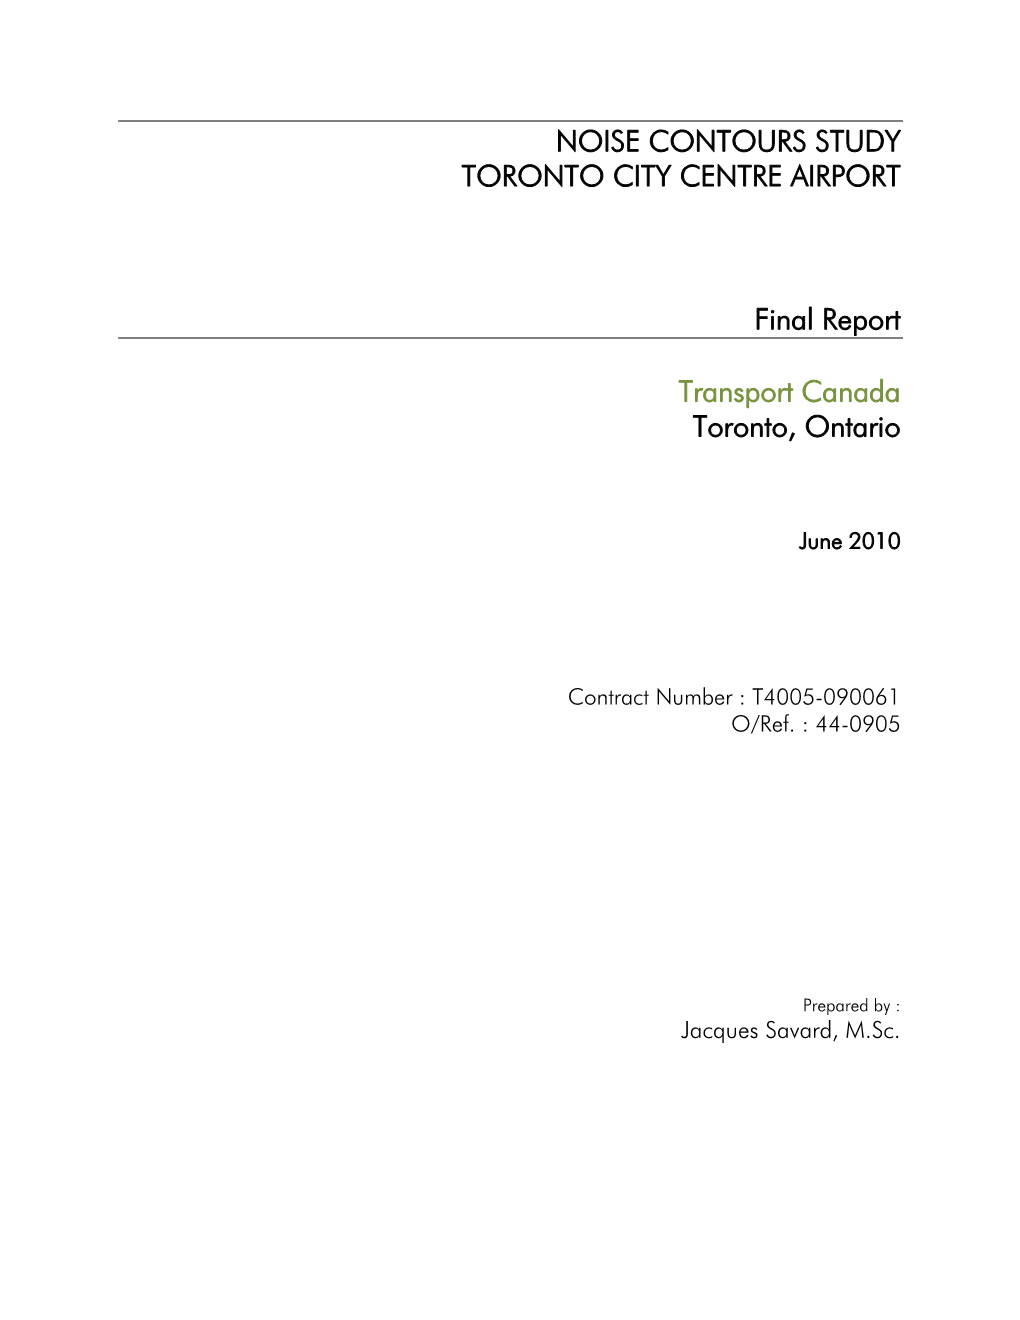 Noise Contours Study Toronto City Centre Airport